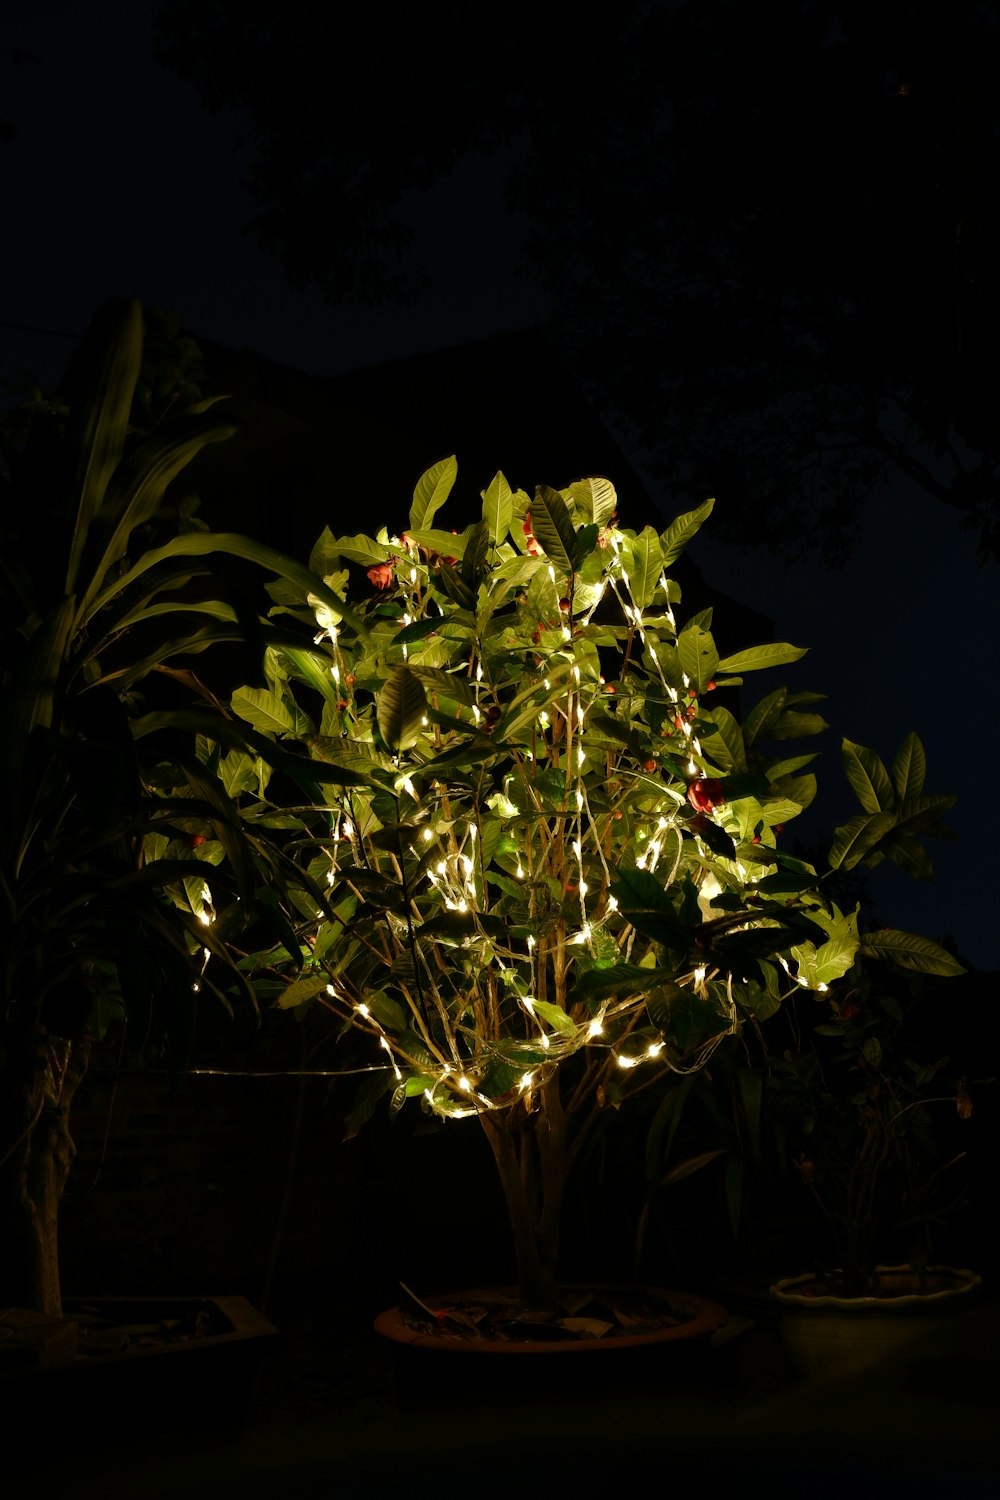 Un árbol iluminado en una maceta en la oscuridad